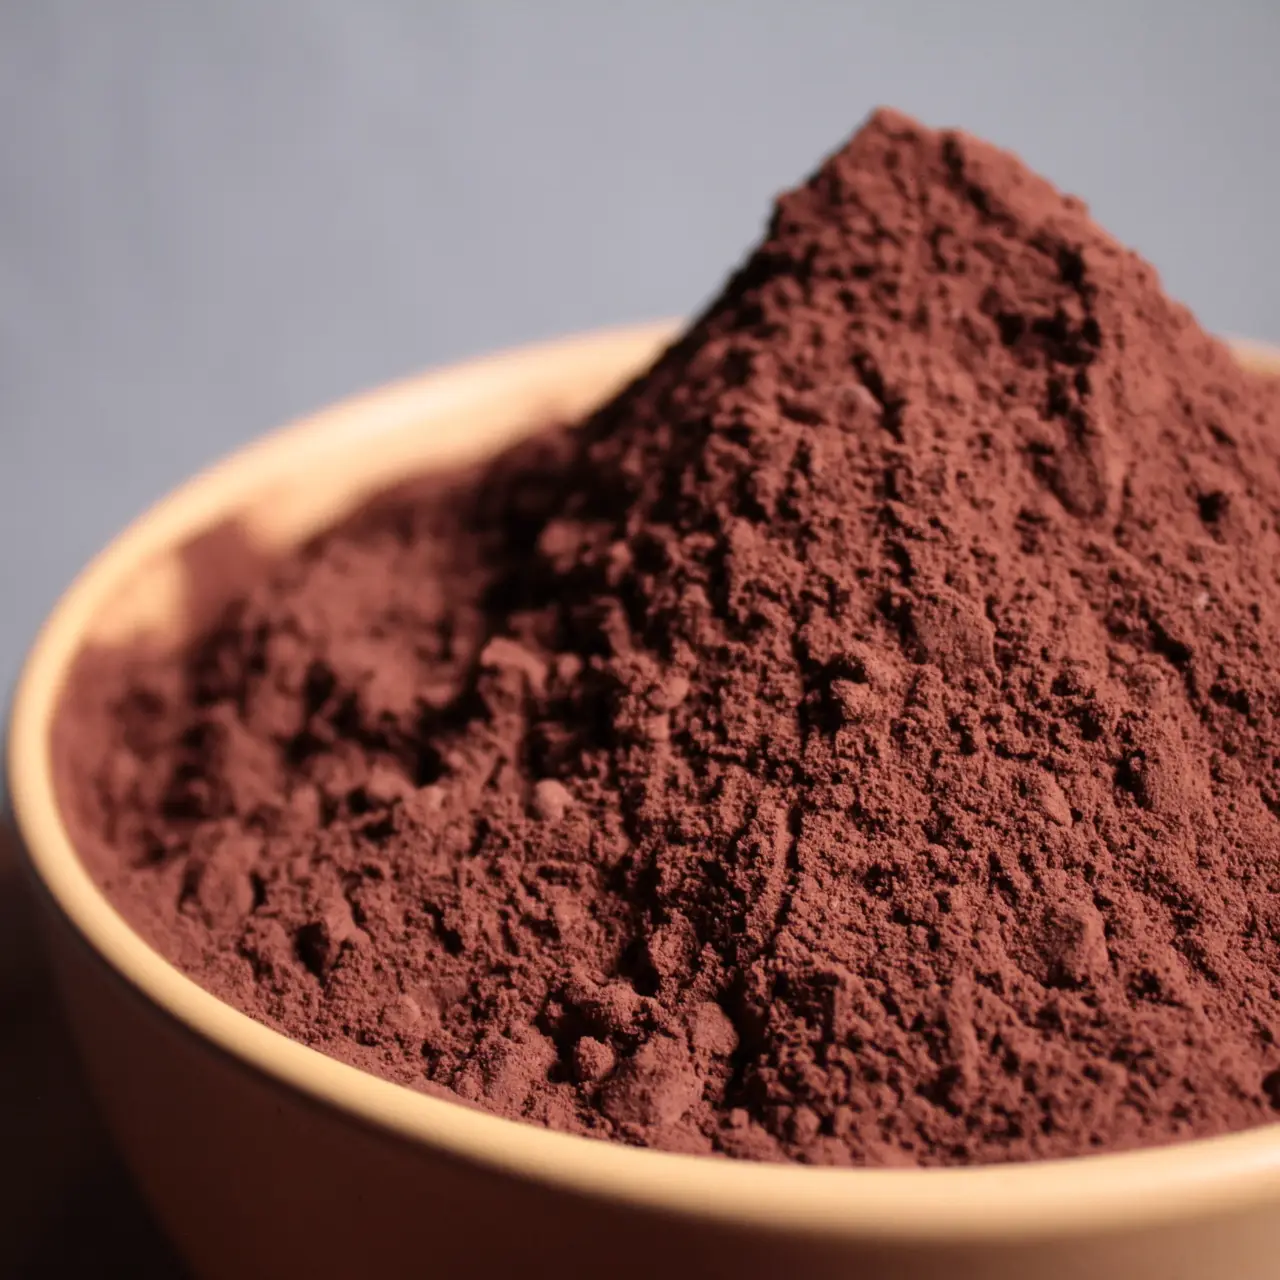 Купить Що таке органічний какао-порошок? за 0 грн